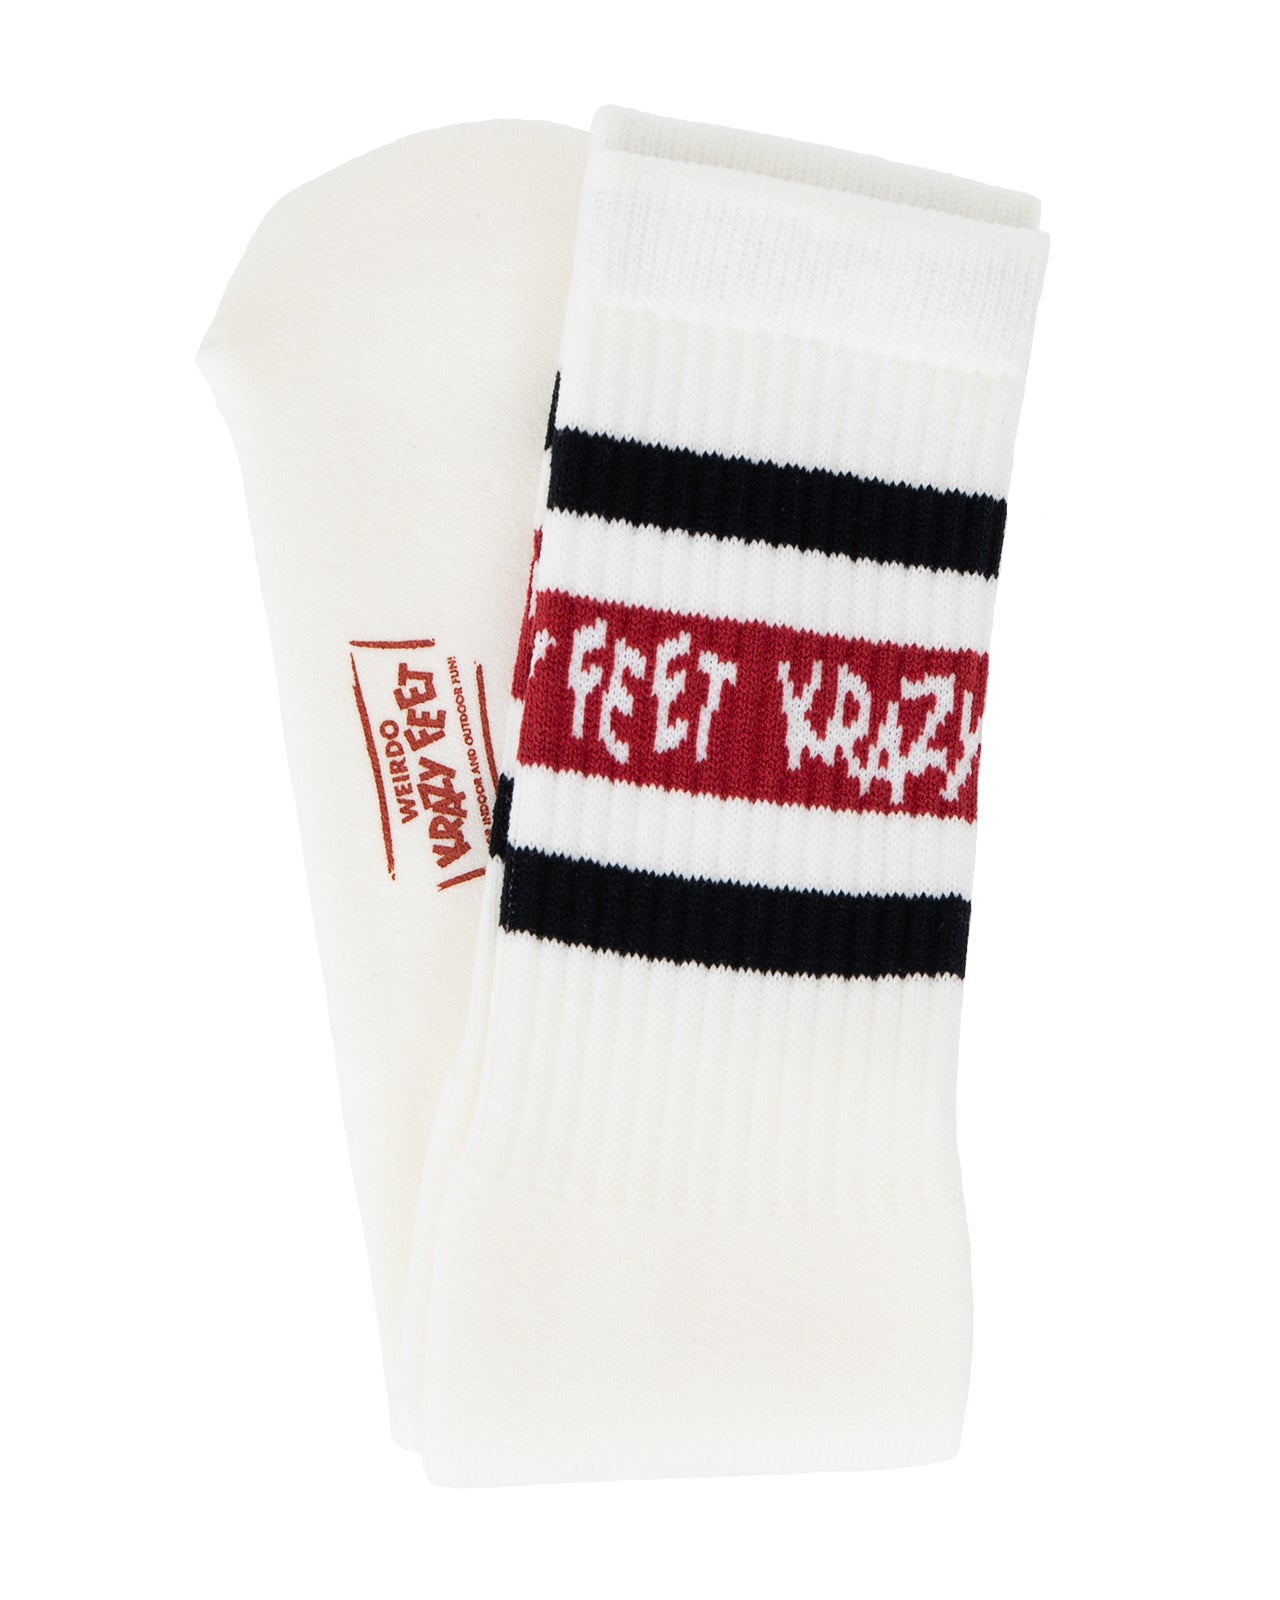 Weirdo Krazy Feet Tube Socks, Red